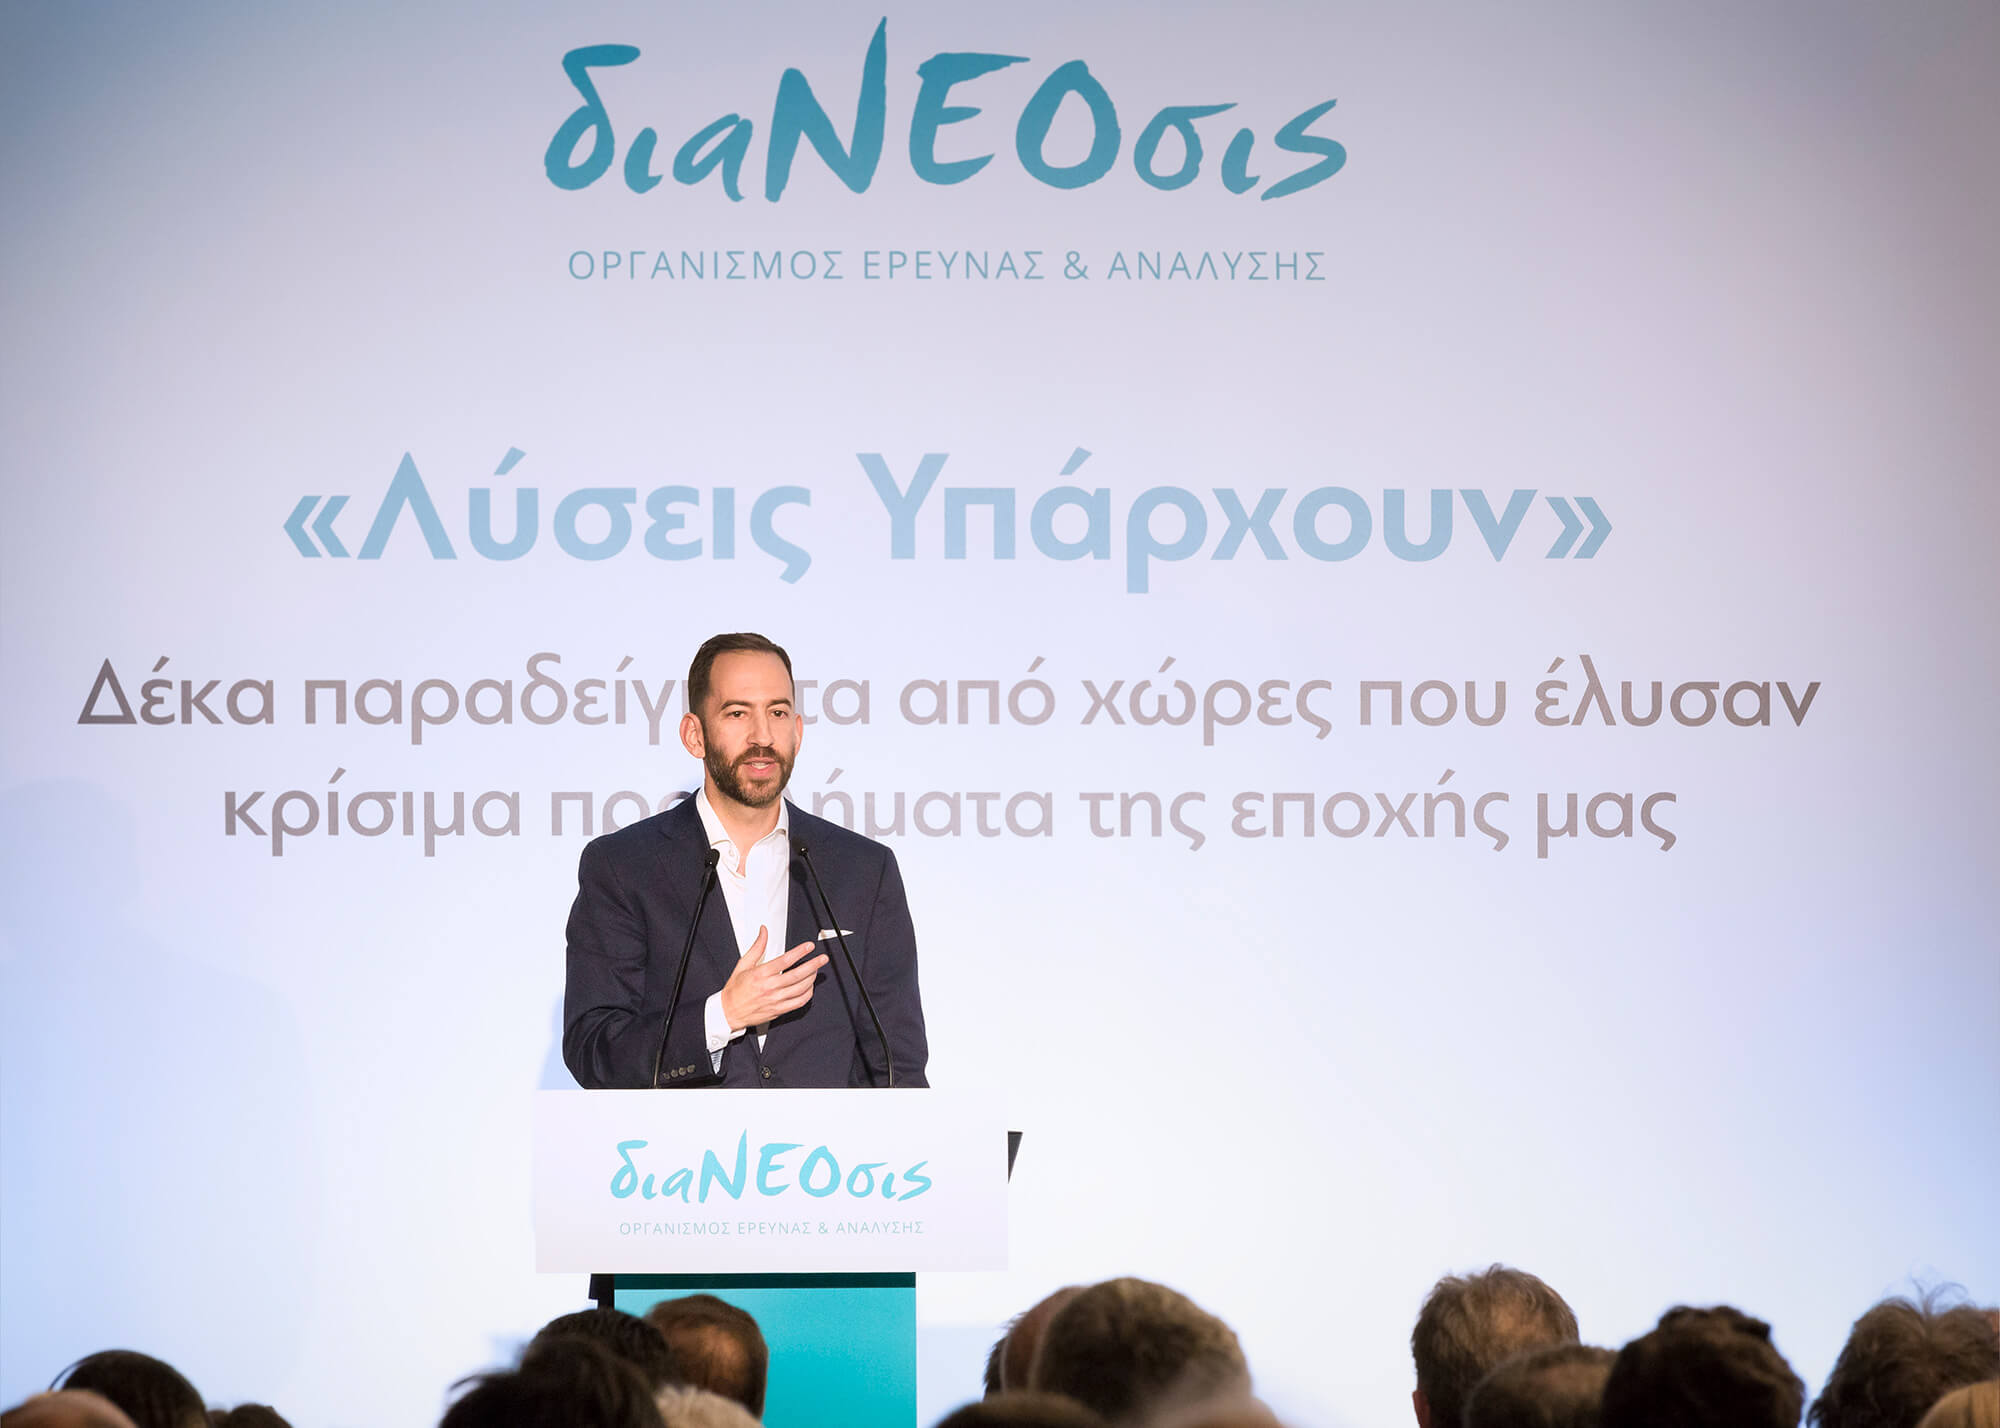 Ολόκληρη η ομιλία του δημοσιογράφου και συγγραφέα Τζόναθαν Τέπερμαν στην εκδήλωση της διαΝΕΟσις με αφορμή την ελληνική μετάφραση του βιβλίου του.